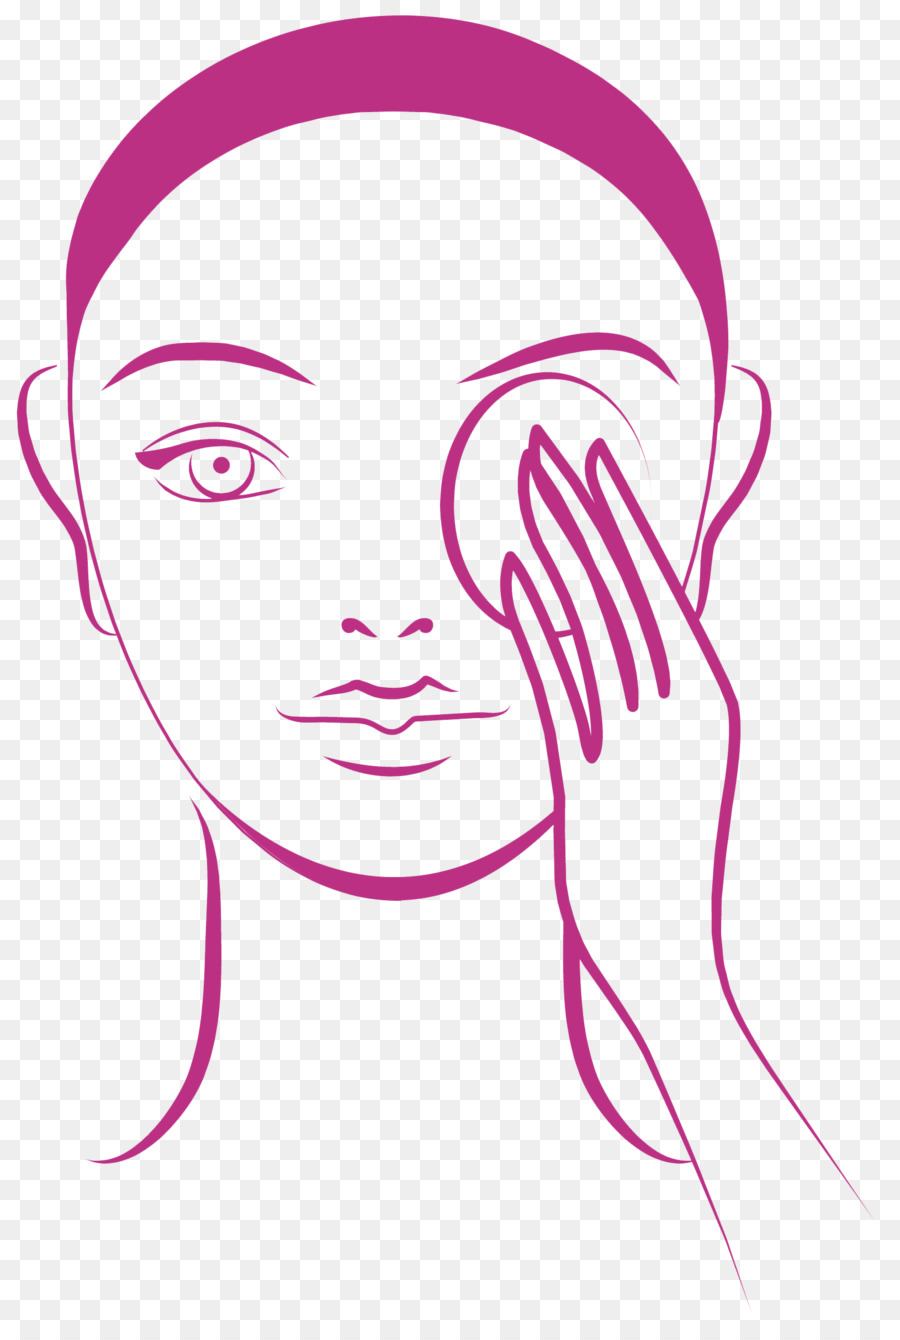 La sindrome dell'occhio secco Clip art, Illustrazione, Immagine - rigenerare icona